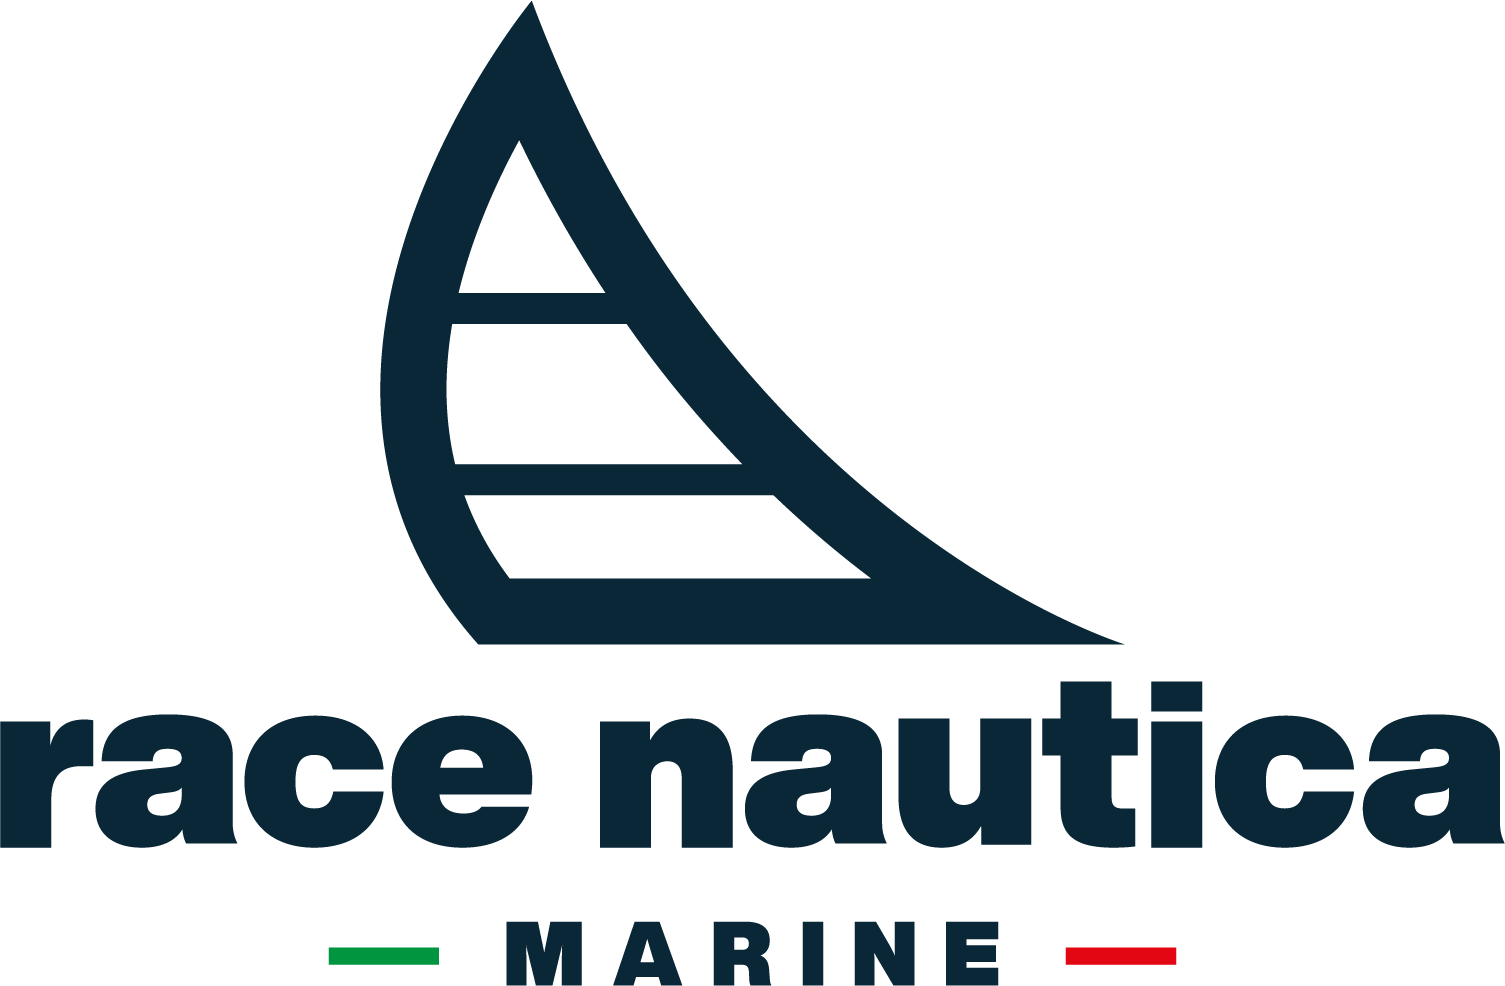 Race Nautica Marine